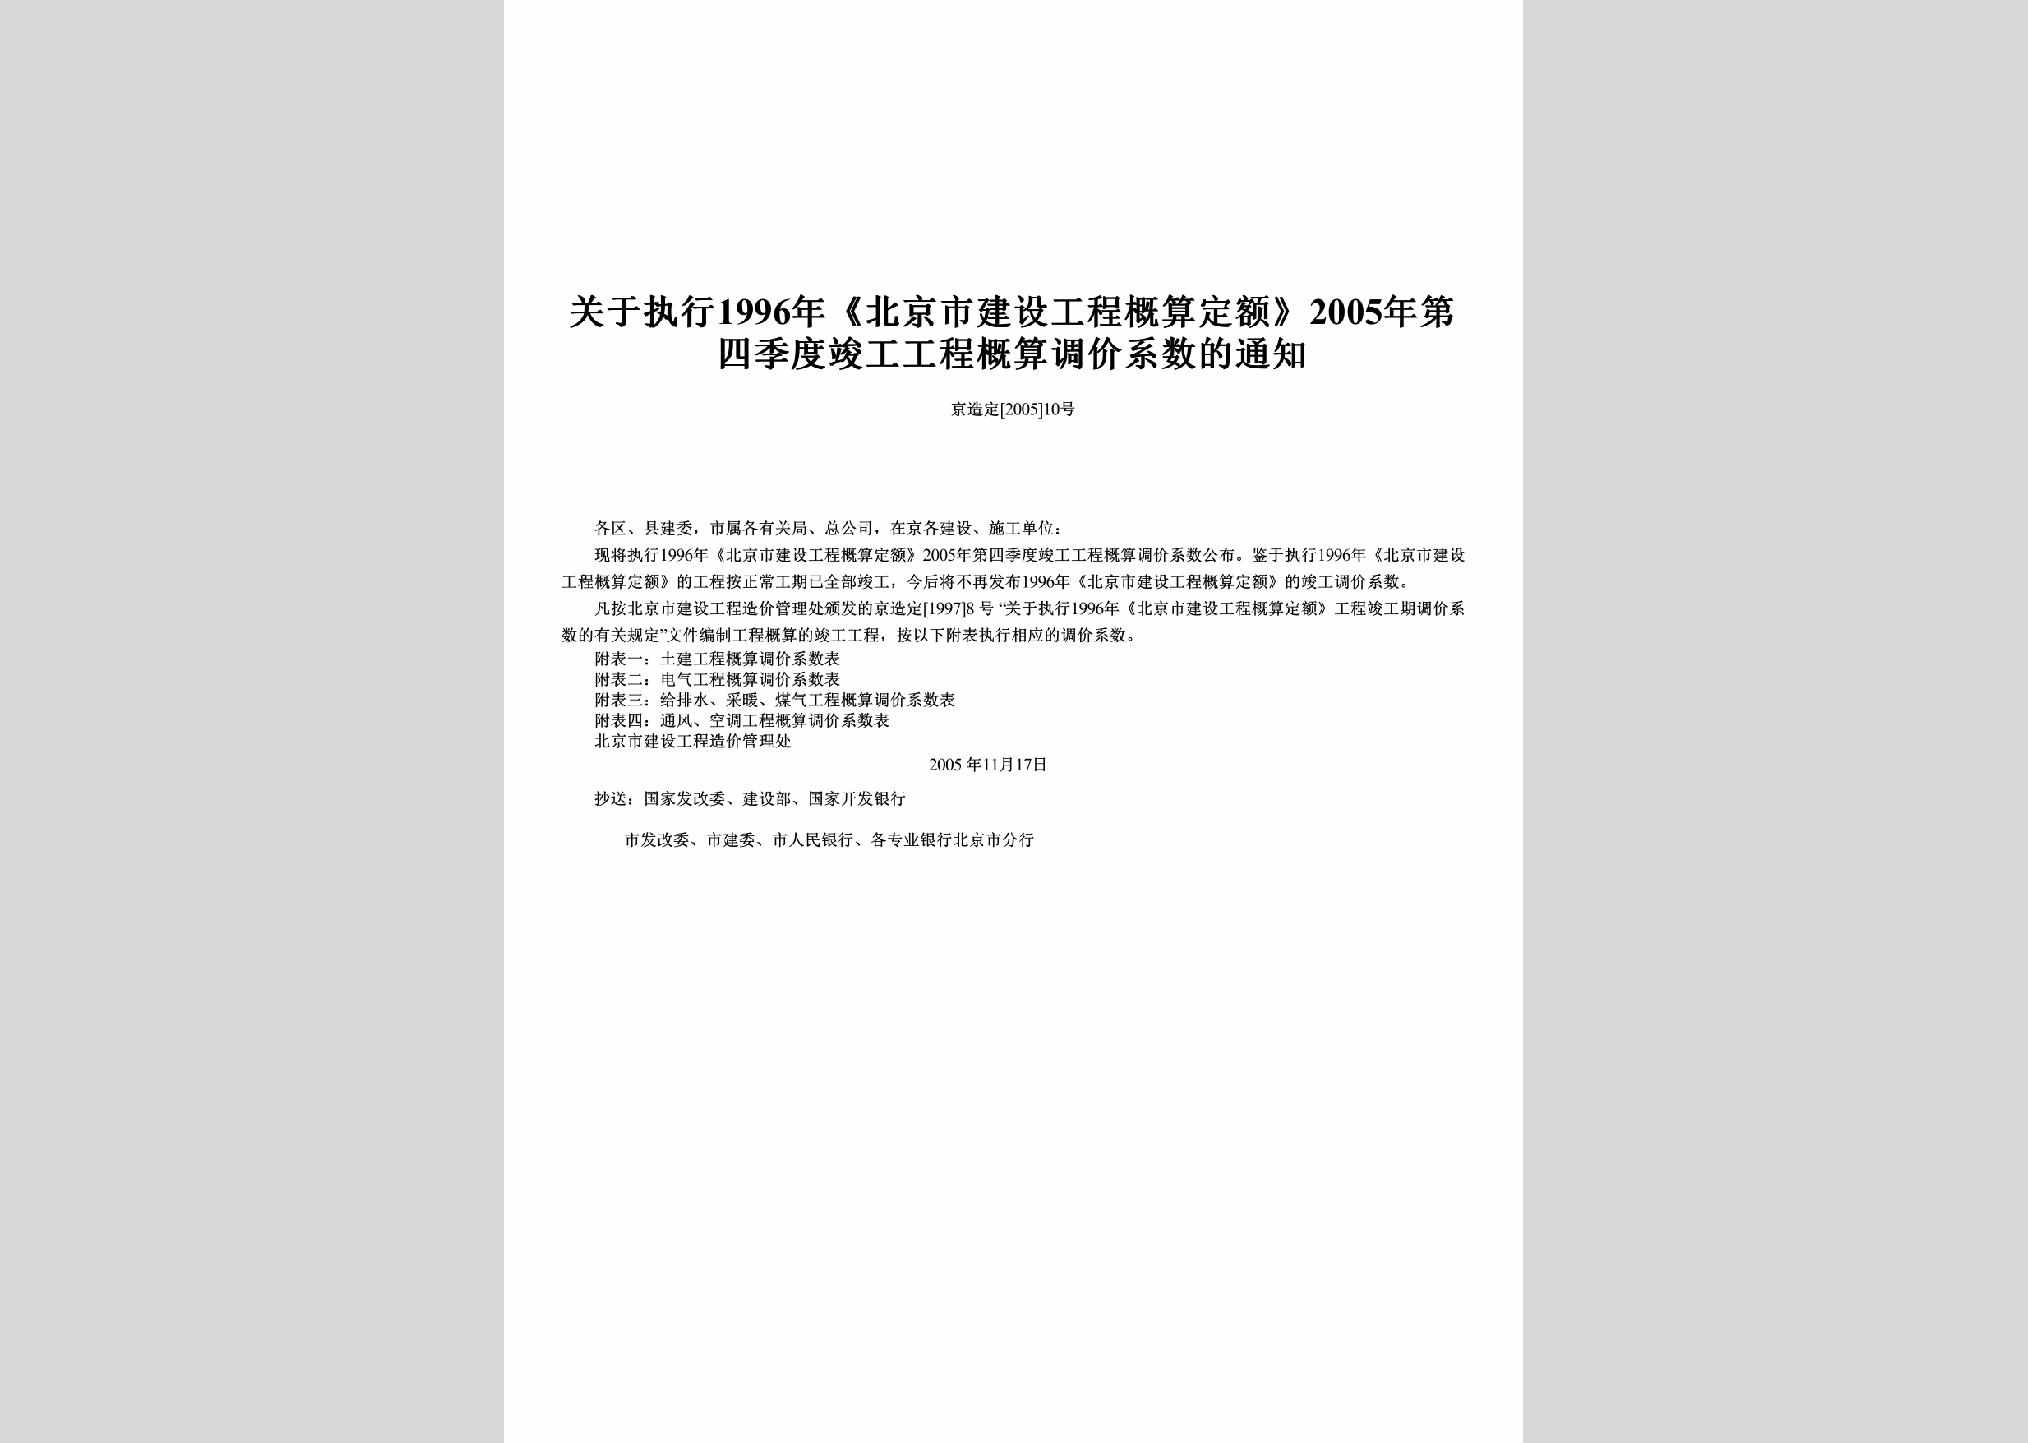 京造定[2005]10号：关于执行1996年《北京市建设工程概算定额》2005年第四季度竣工工程概算调价系数的通知